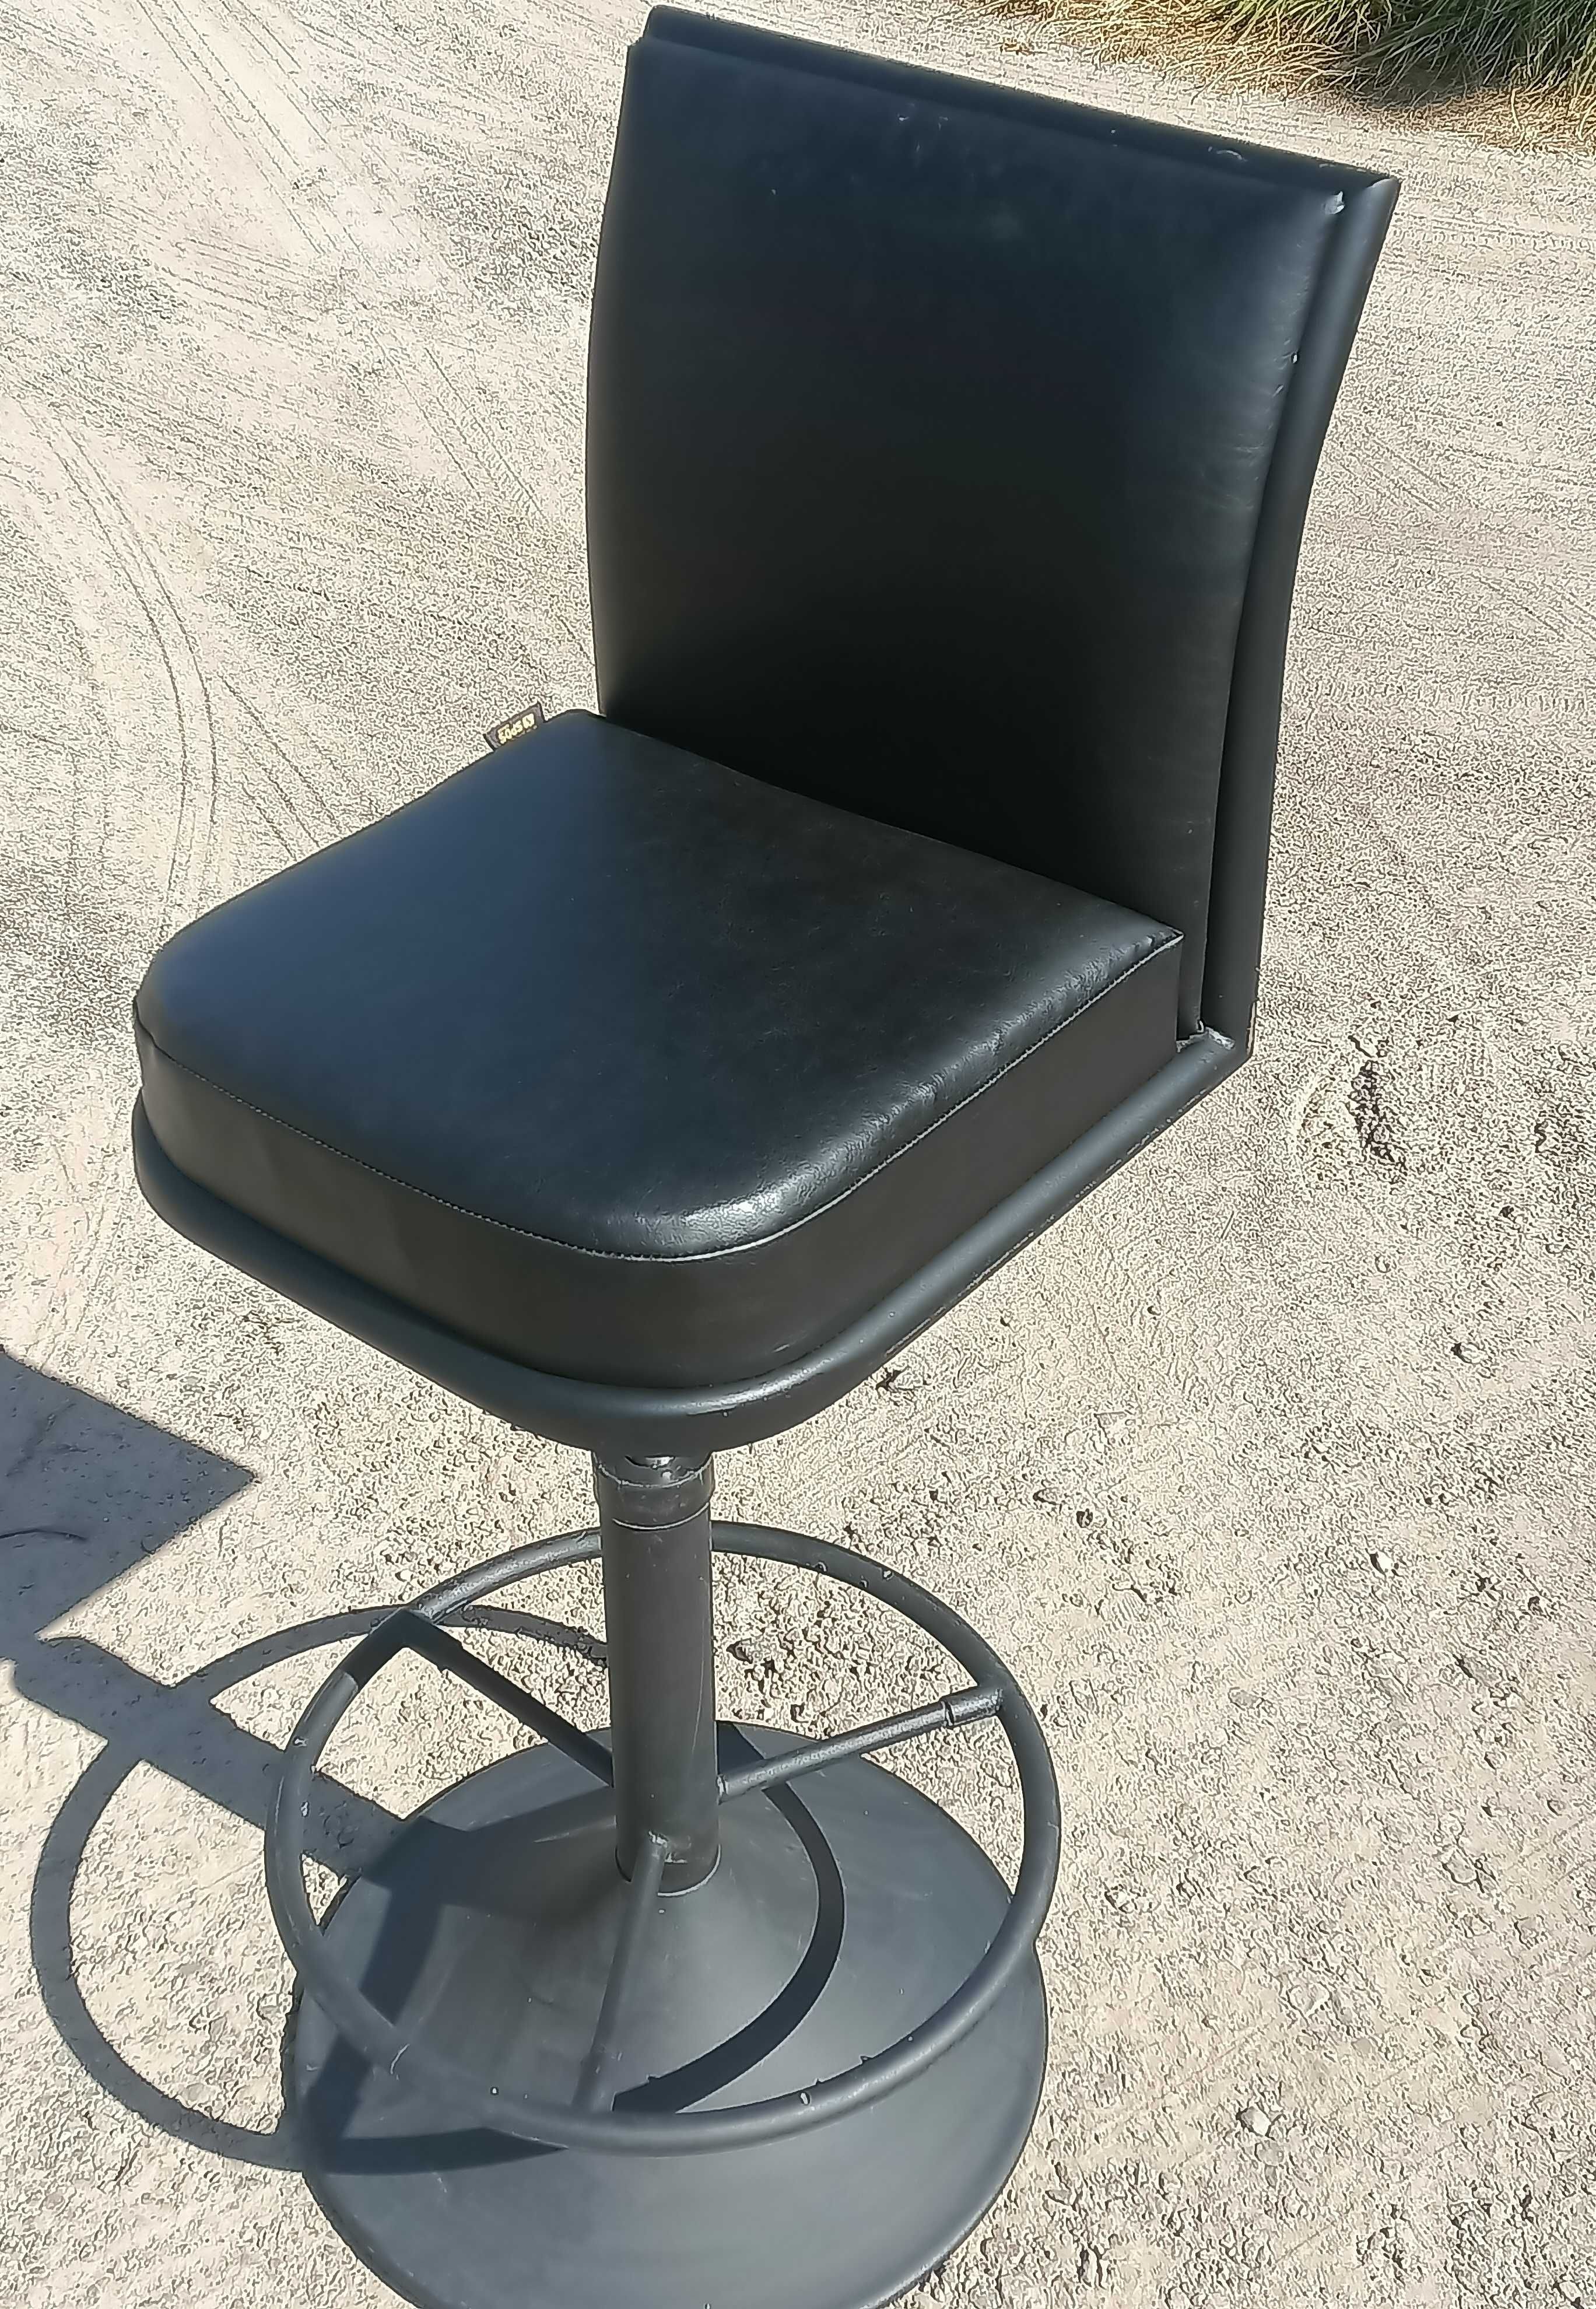 Кресла поворотные для парикмахеров /  стулья на подъёмнике